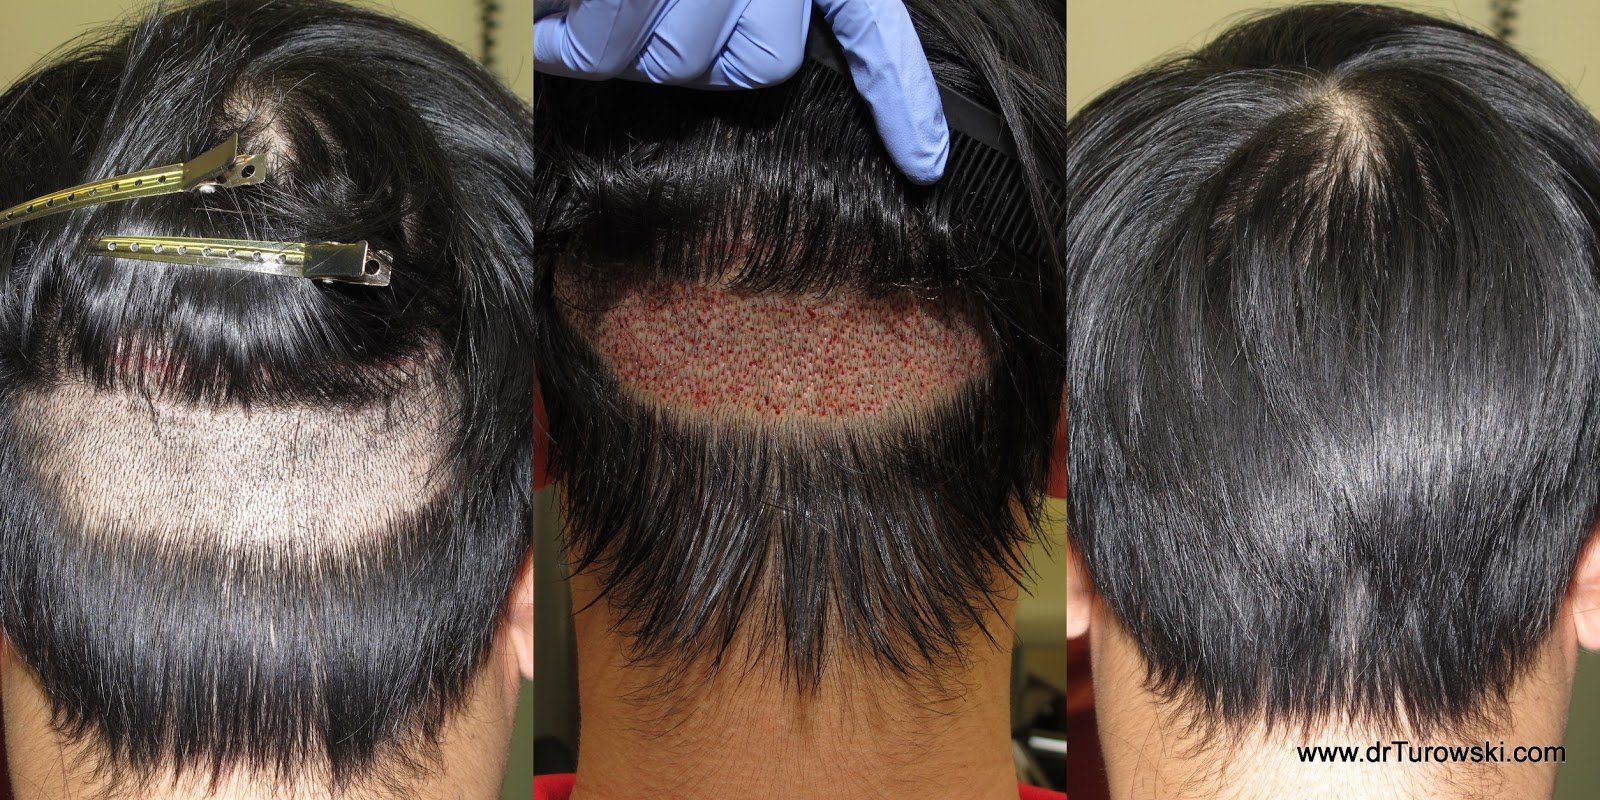 Un-Shaven Hair Transplant Technique